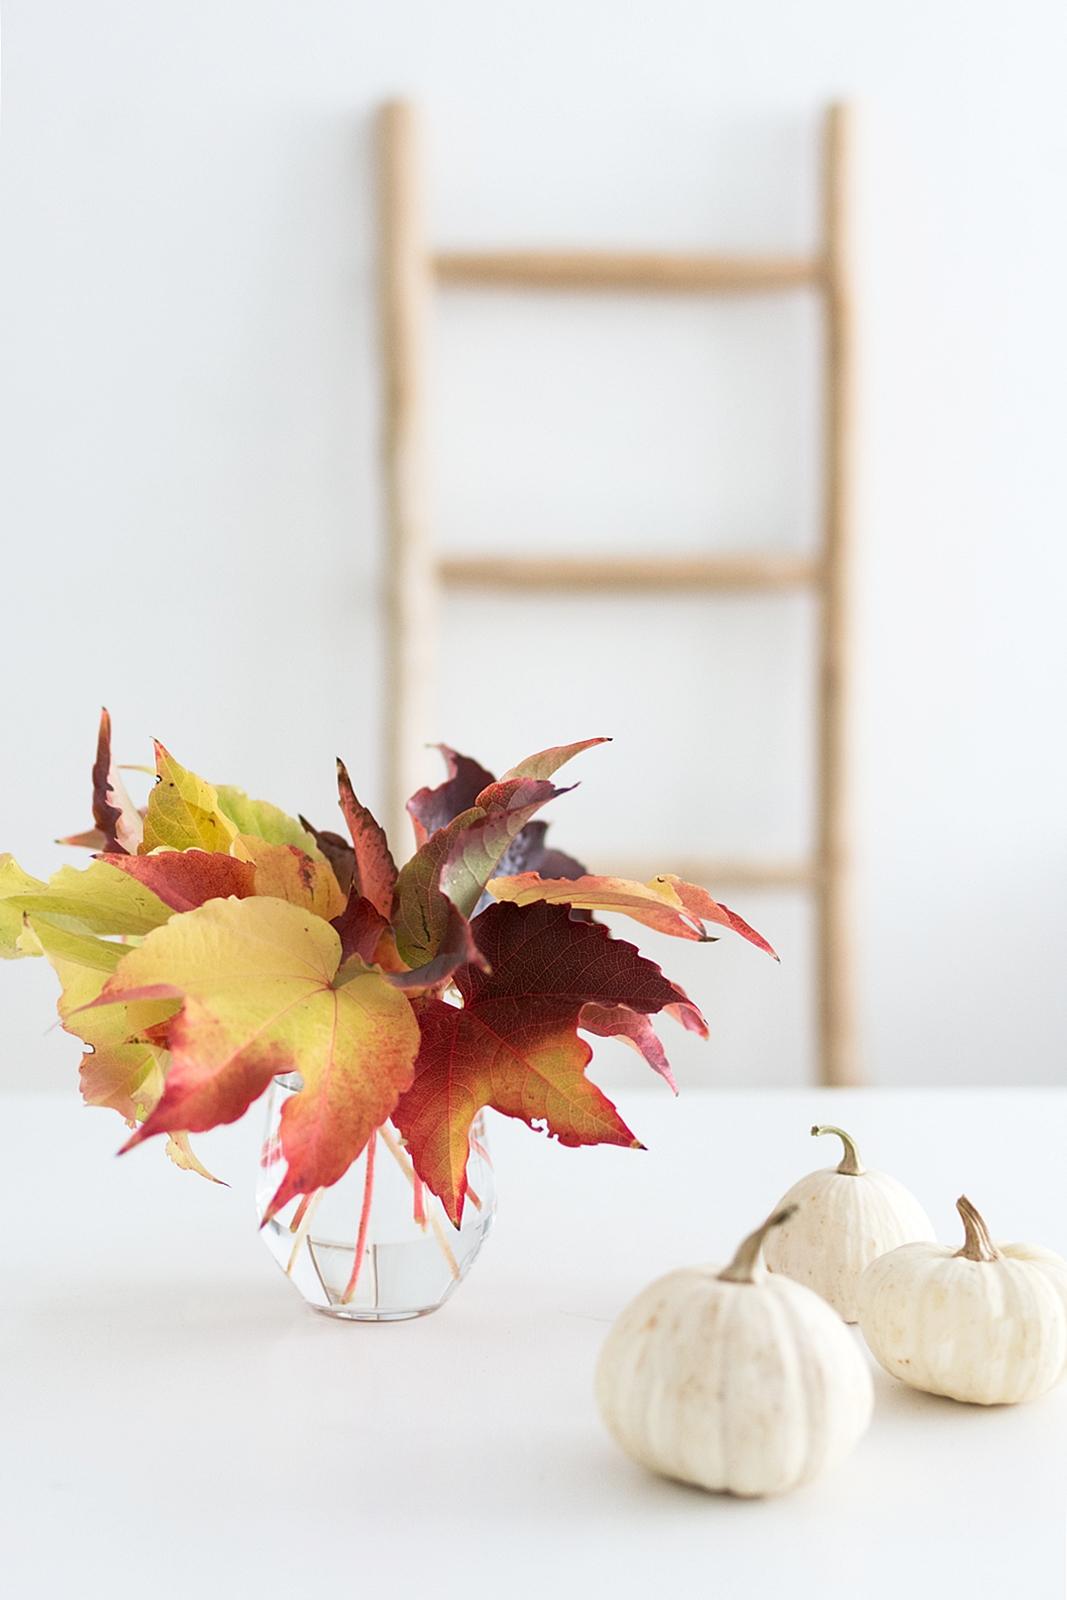 Zum Wochenstart ein feuriger Farbenrausch mit Herbstblättern 🍂🍁
#herbstfarben #interior #herbstdeko #kürbis